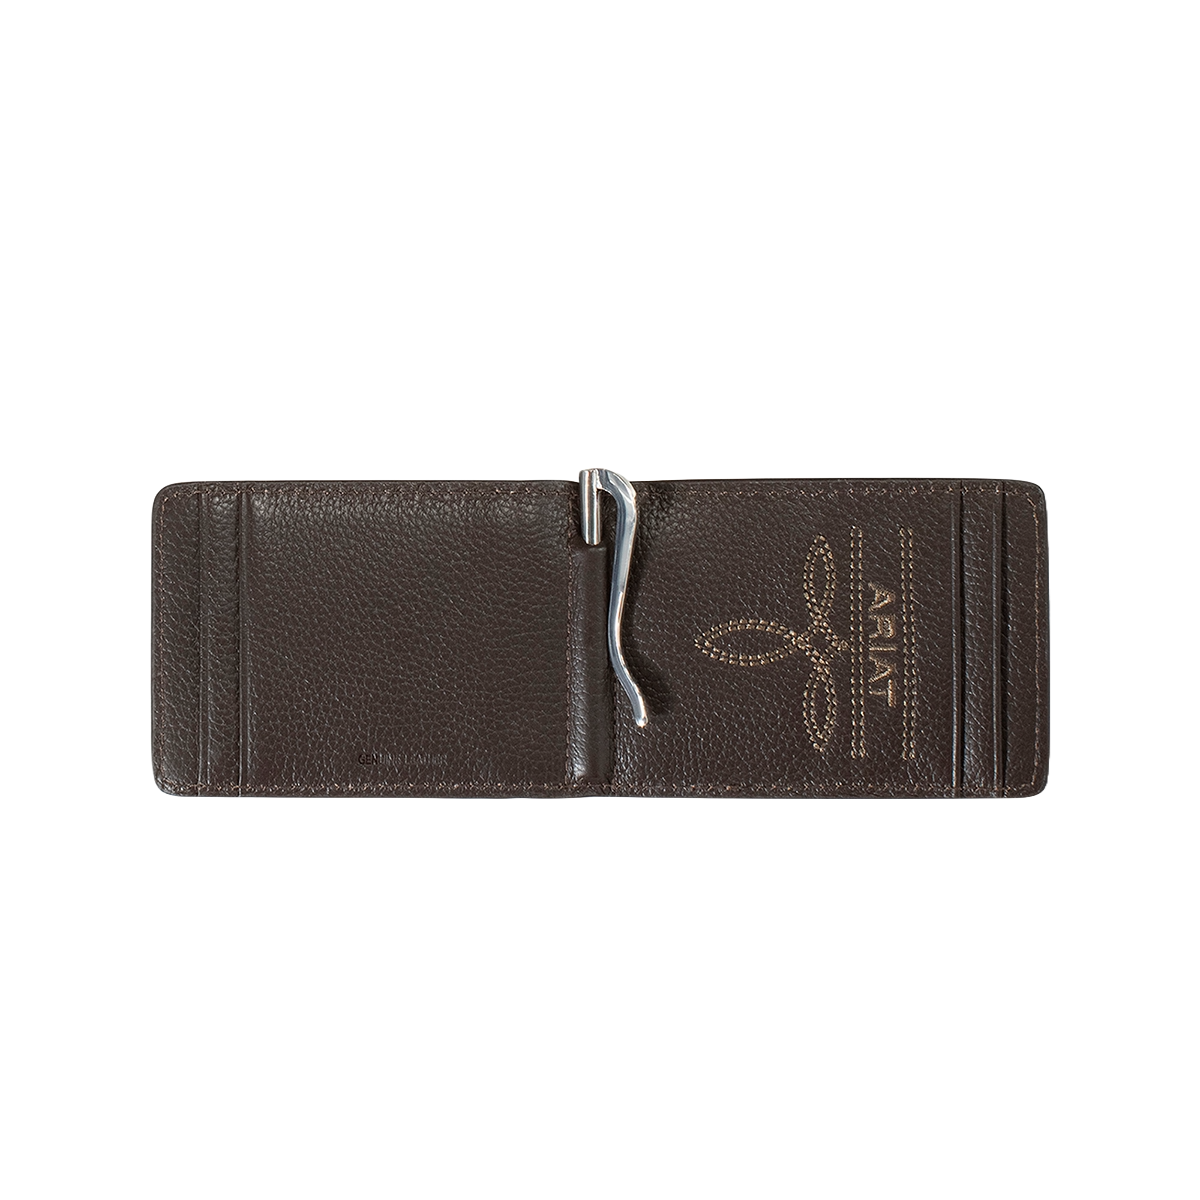 Ariat Men's Sunburst Brown Leather Money Clip Wallet A3557102